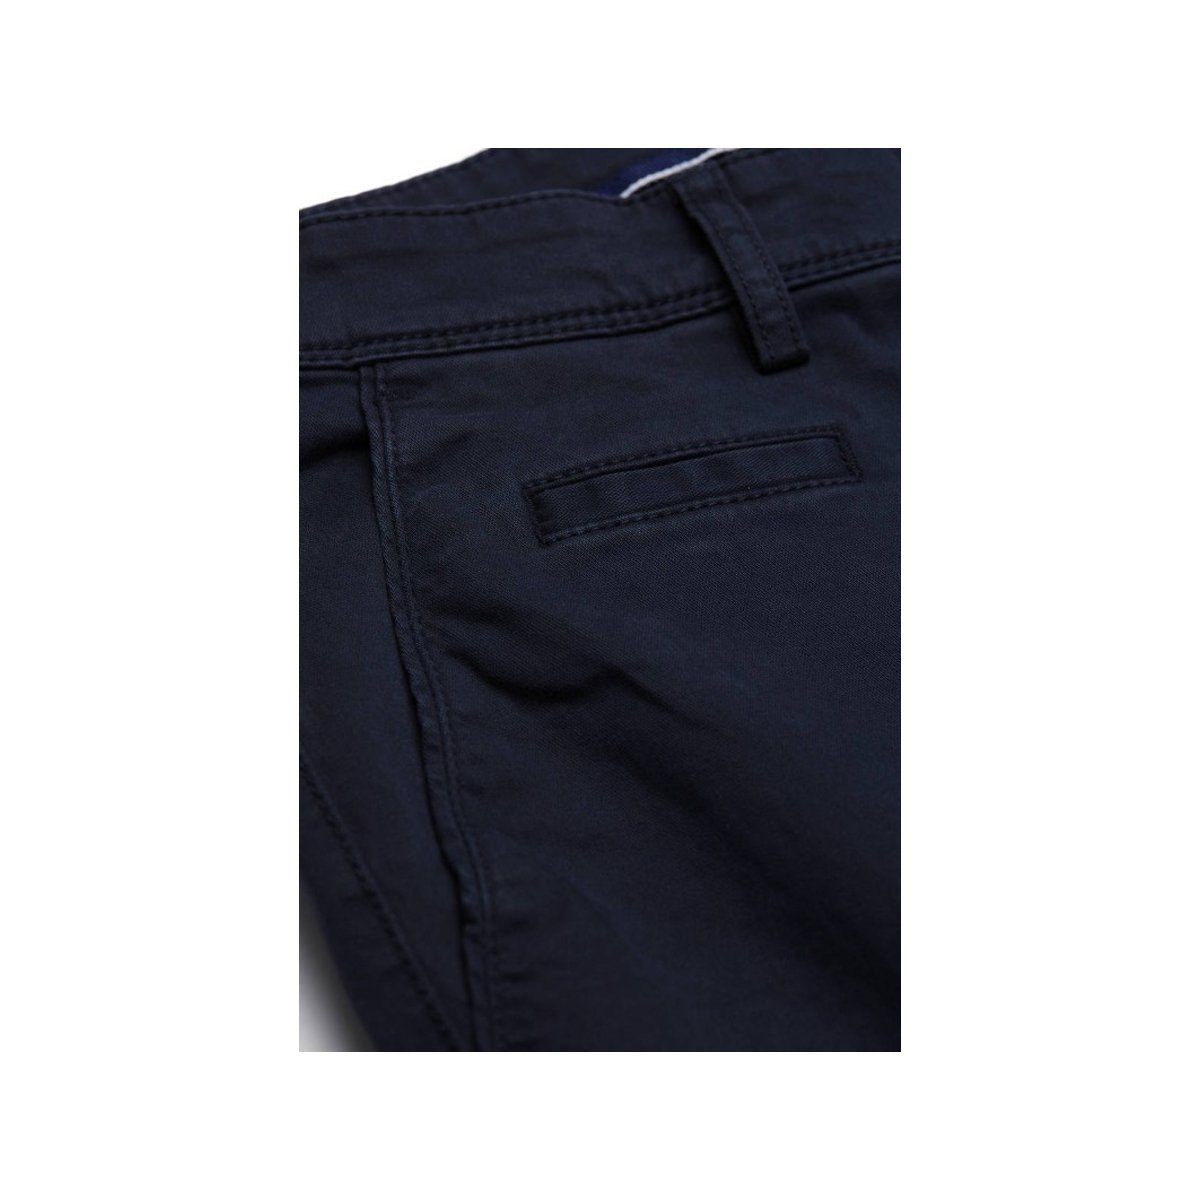 keine regular Angabe) Digel Anzughose (1-tlg., blau